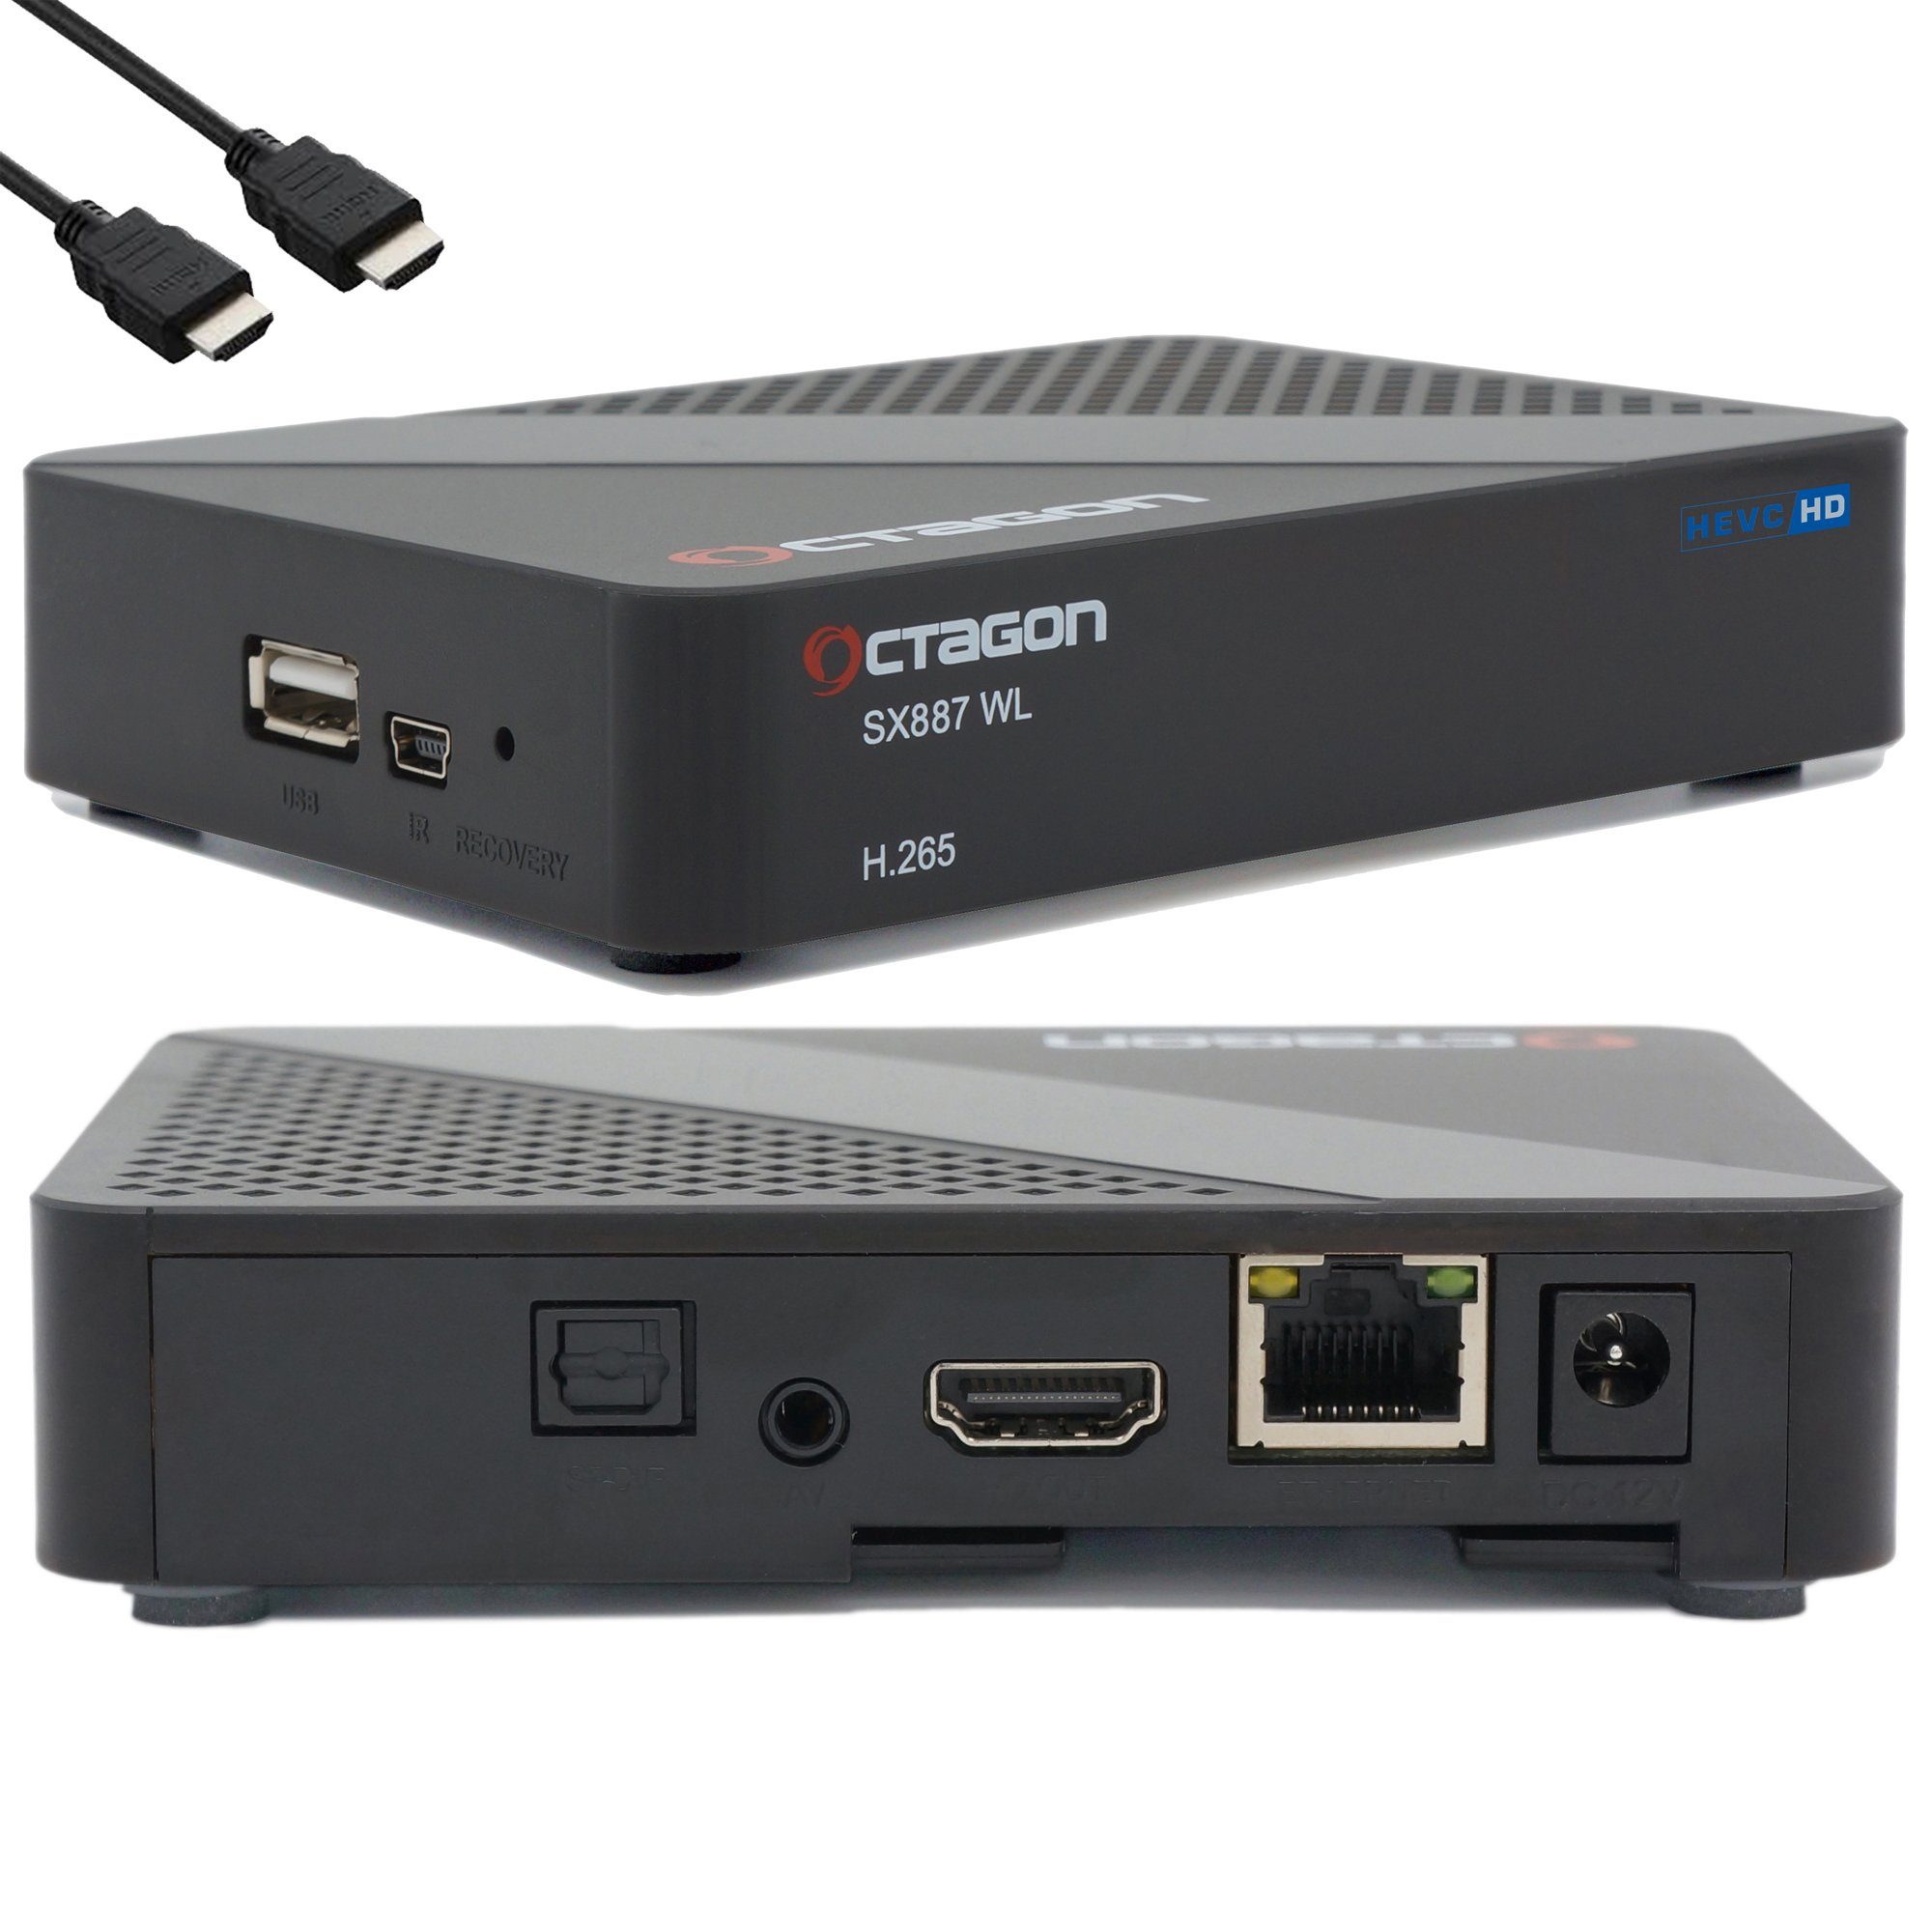 OCTAGON Streaming-Box SX887 HD WL Smart Box 150 Mbits IP H.265 HEVC IPTV WiFi mit